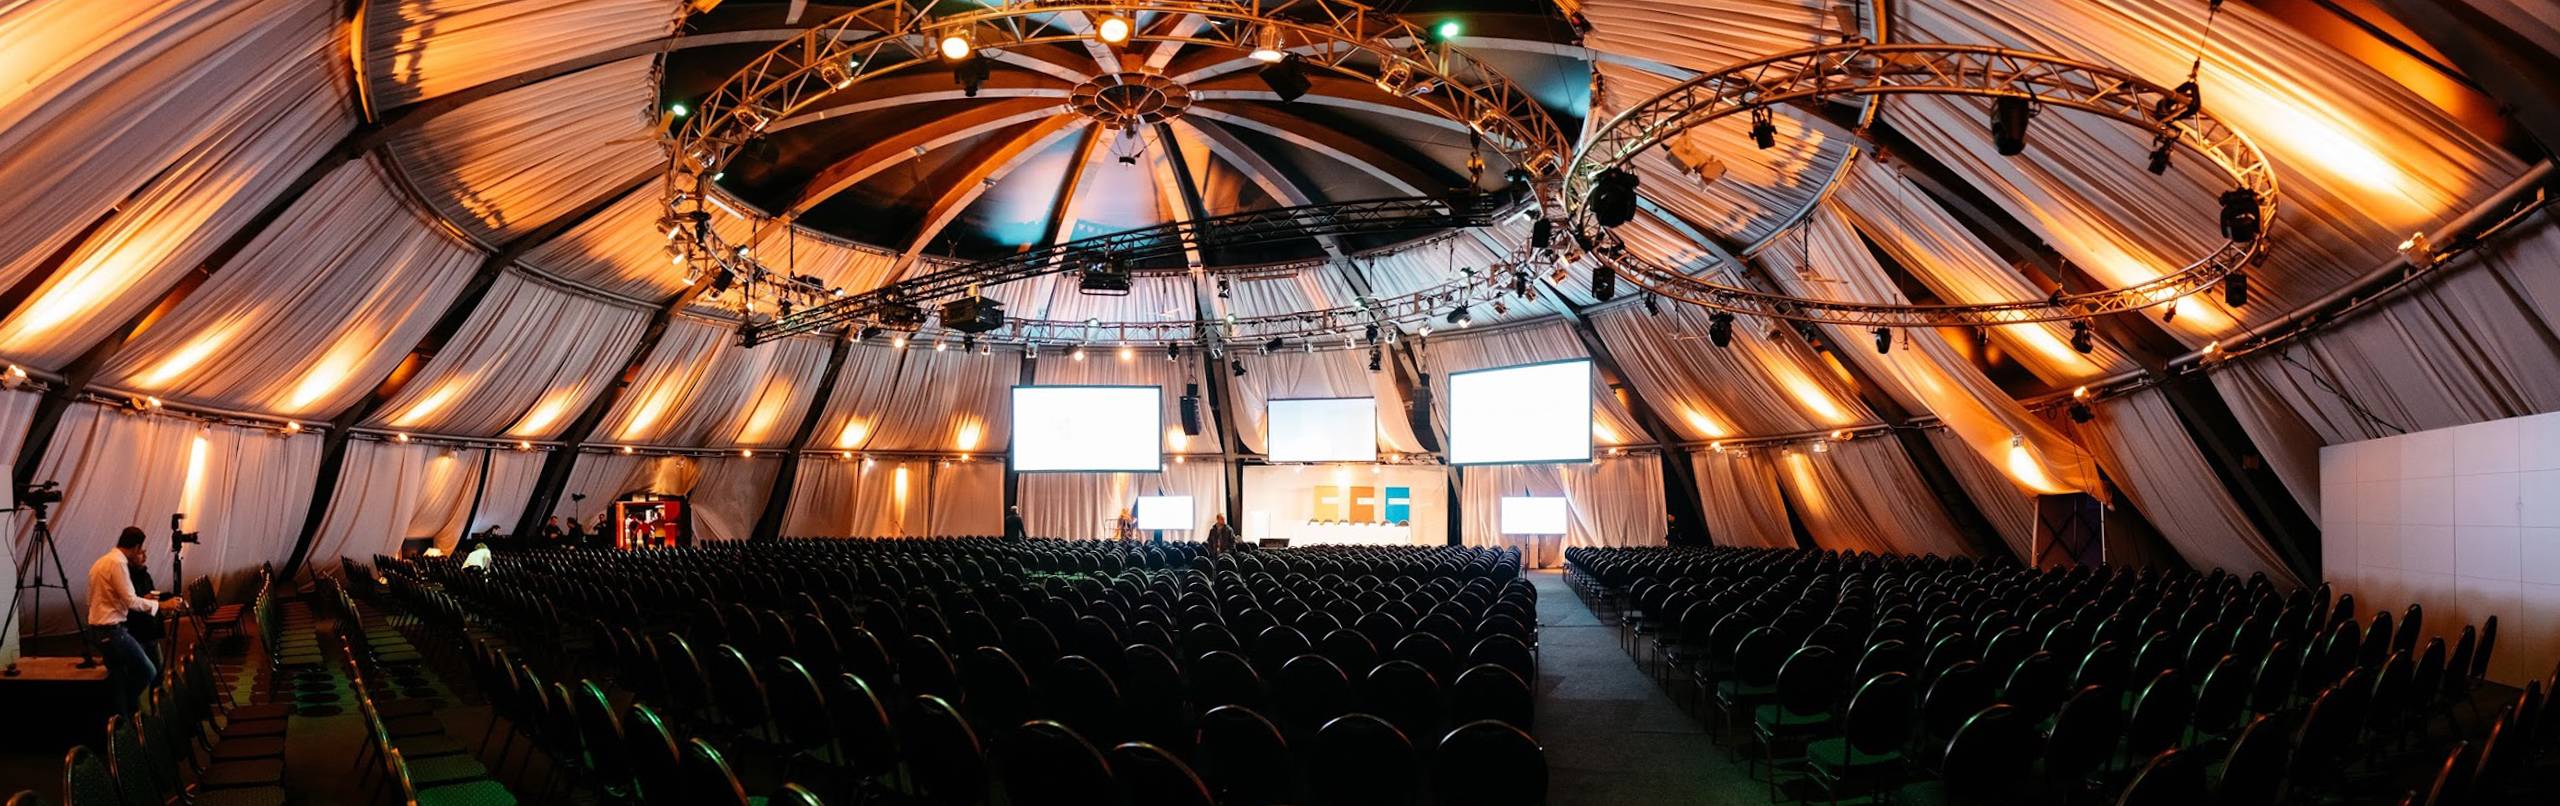 Location Kuppel Hamburg große Tagungsräume mit Bühne für Vorträge und Ansprachen